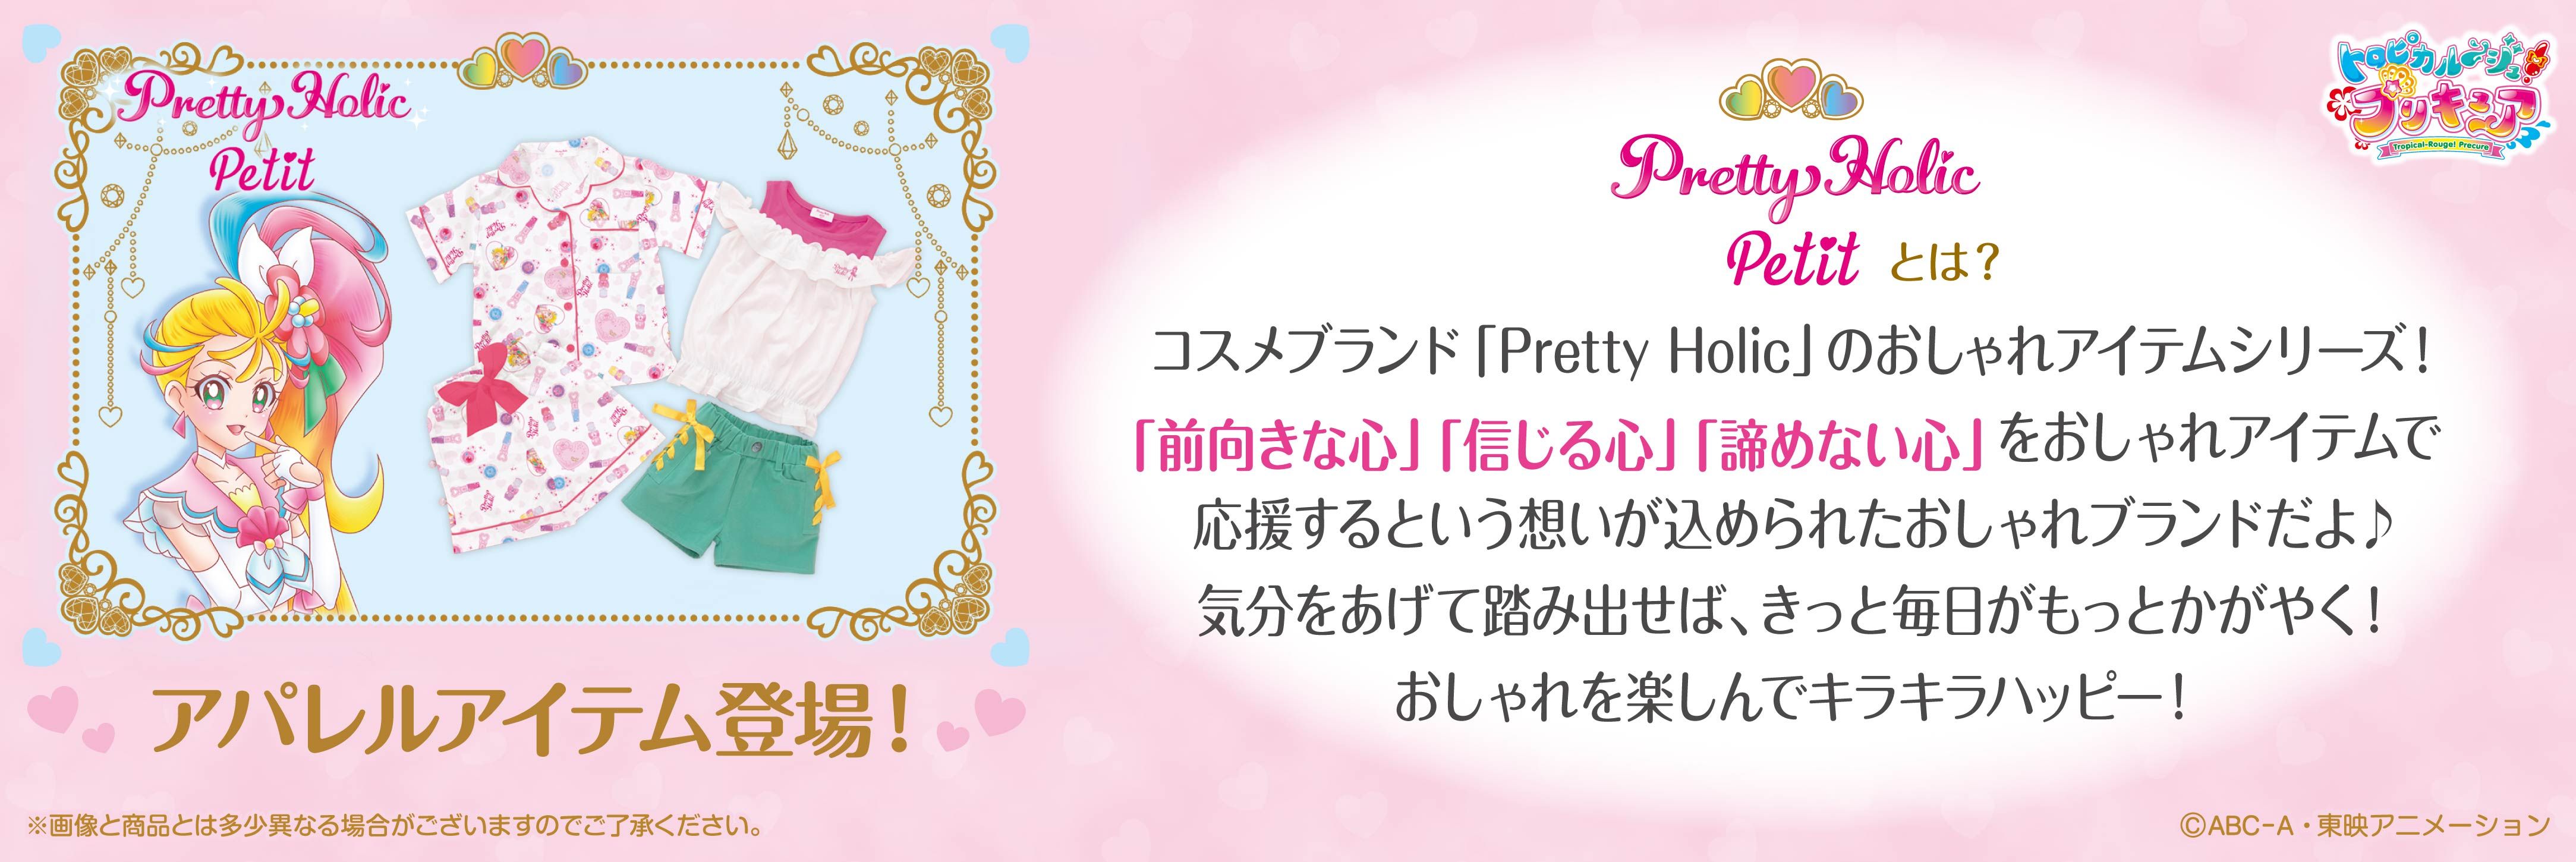 Pretty Holic Petit 親子シャツパジャマ 大人 トロピカル ジュ プリキュア ファッション アクセサリー バンダイナムコグループ公式通販サイト